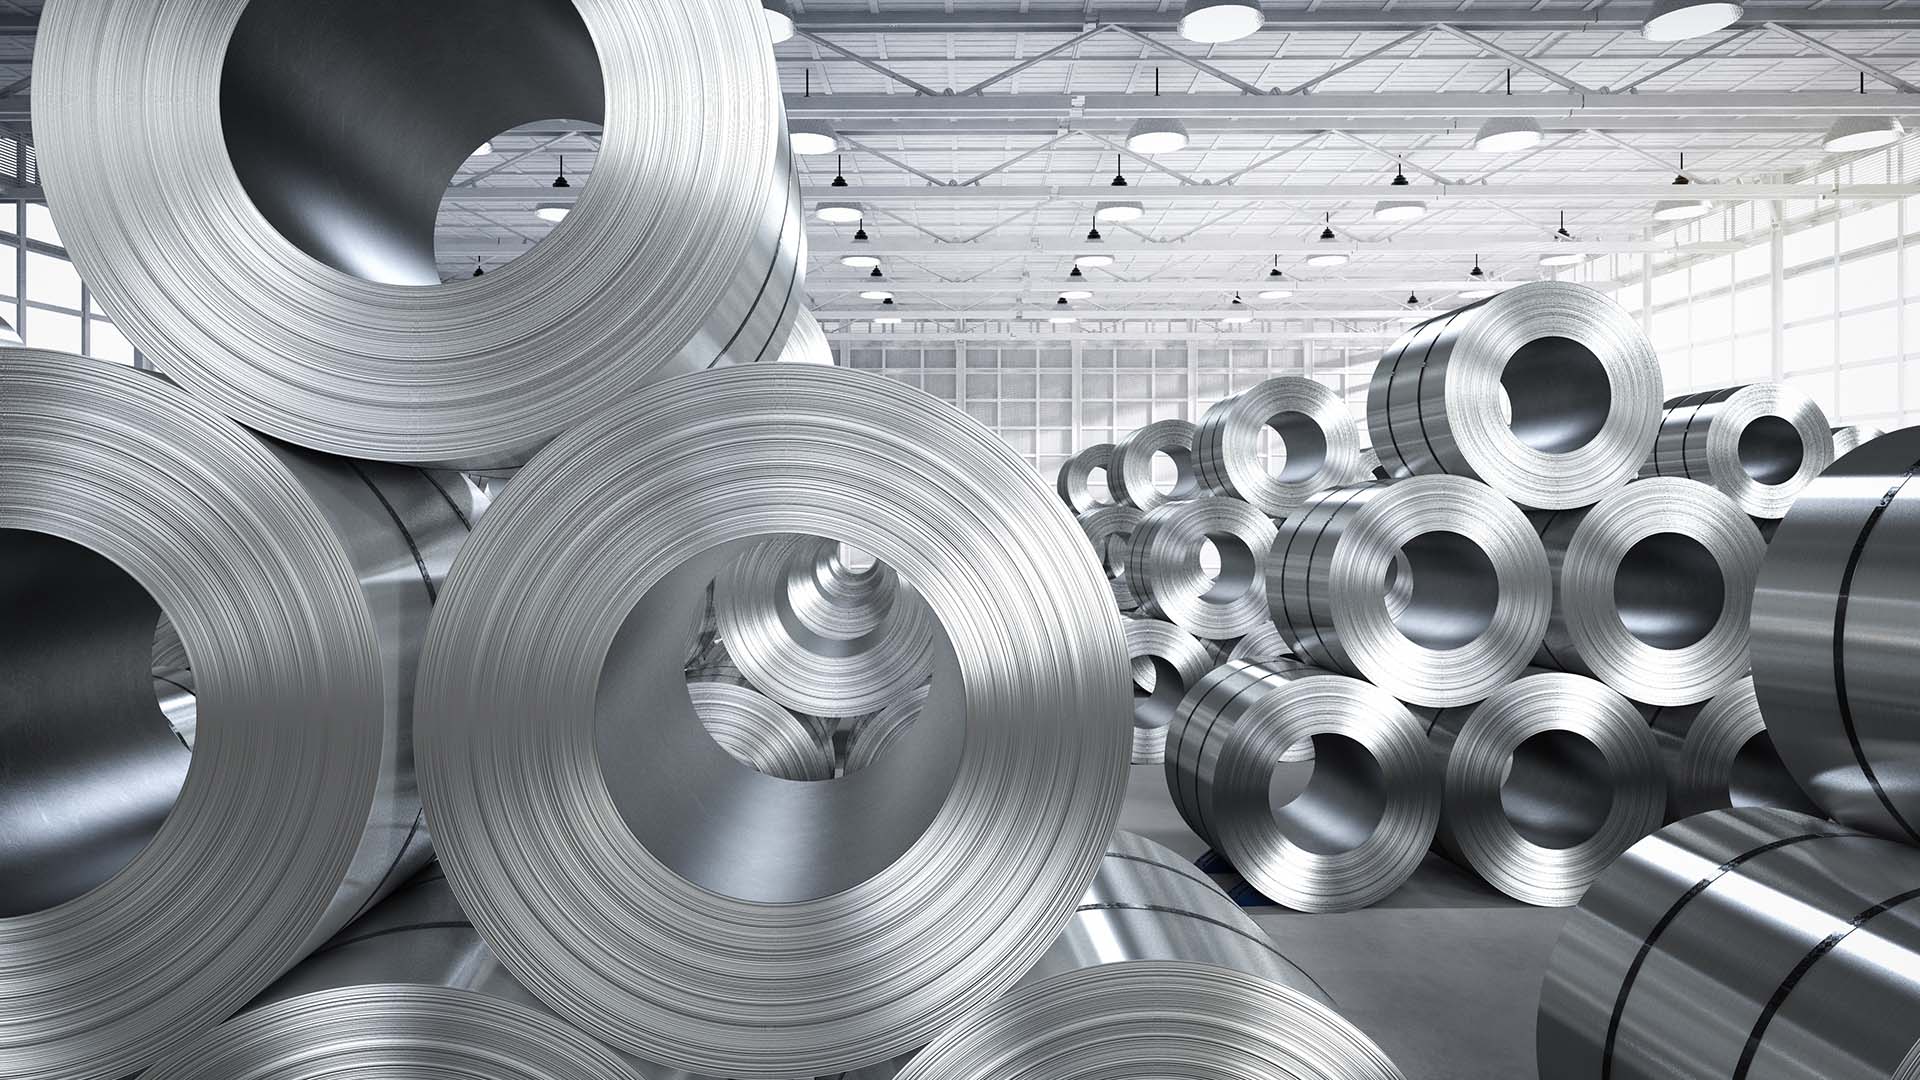 Steel rolls in a warehouse